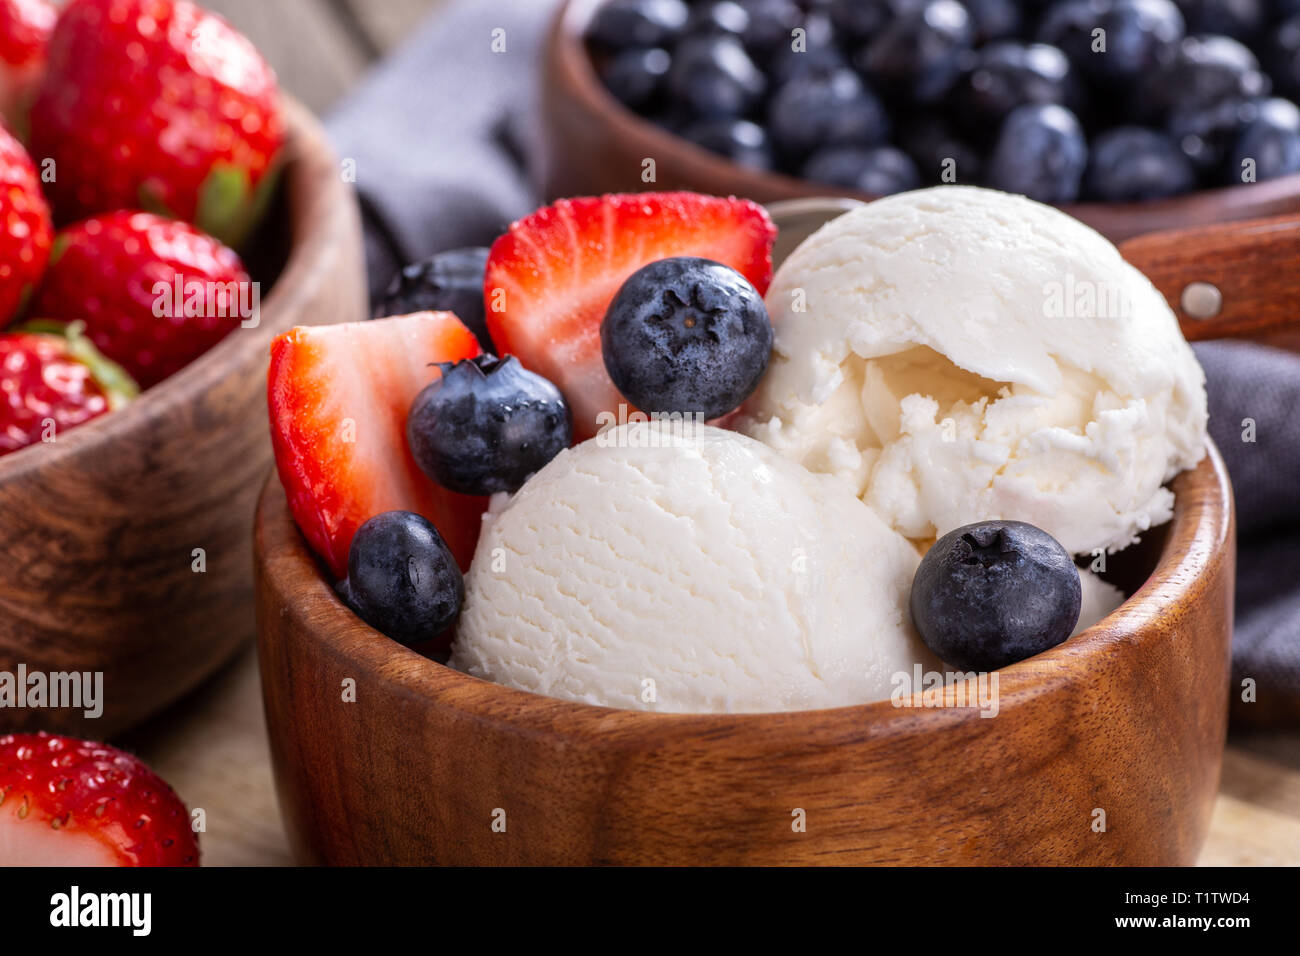 strawberries and vanilla ice cream